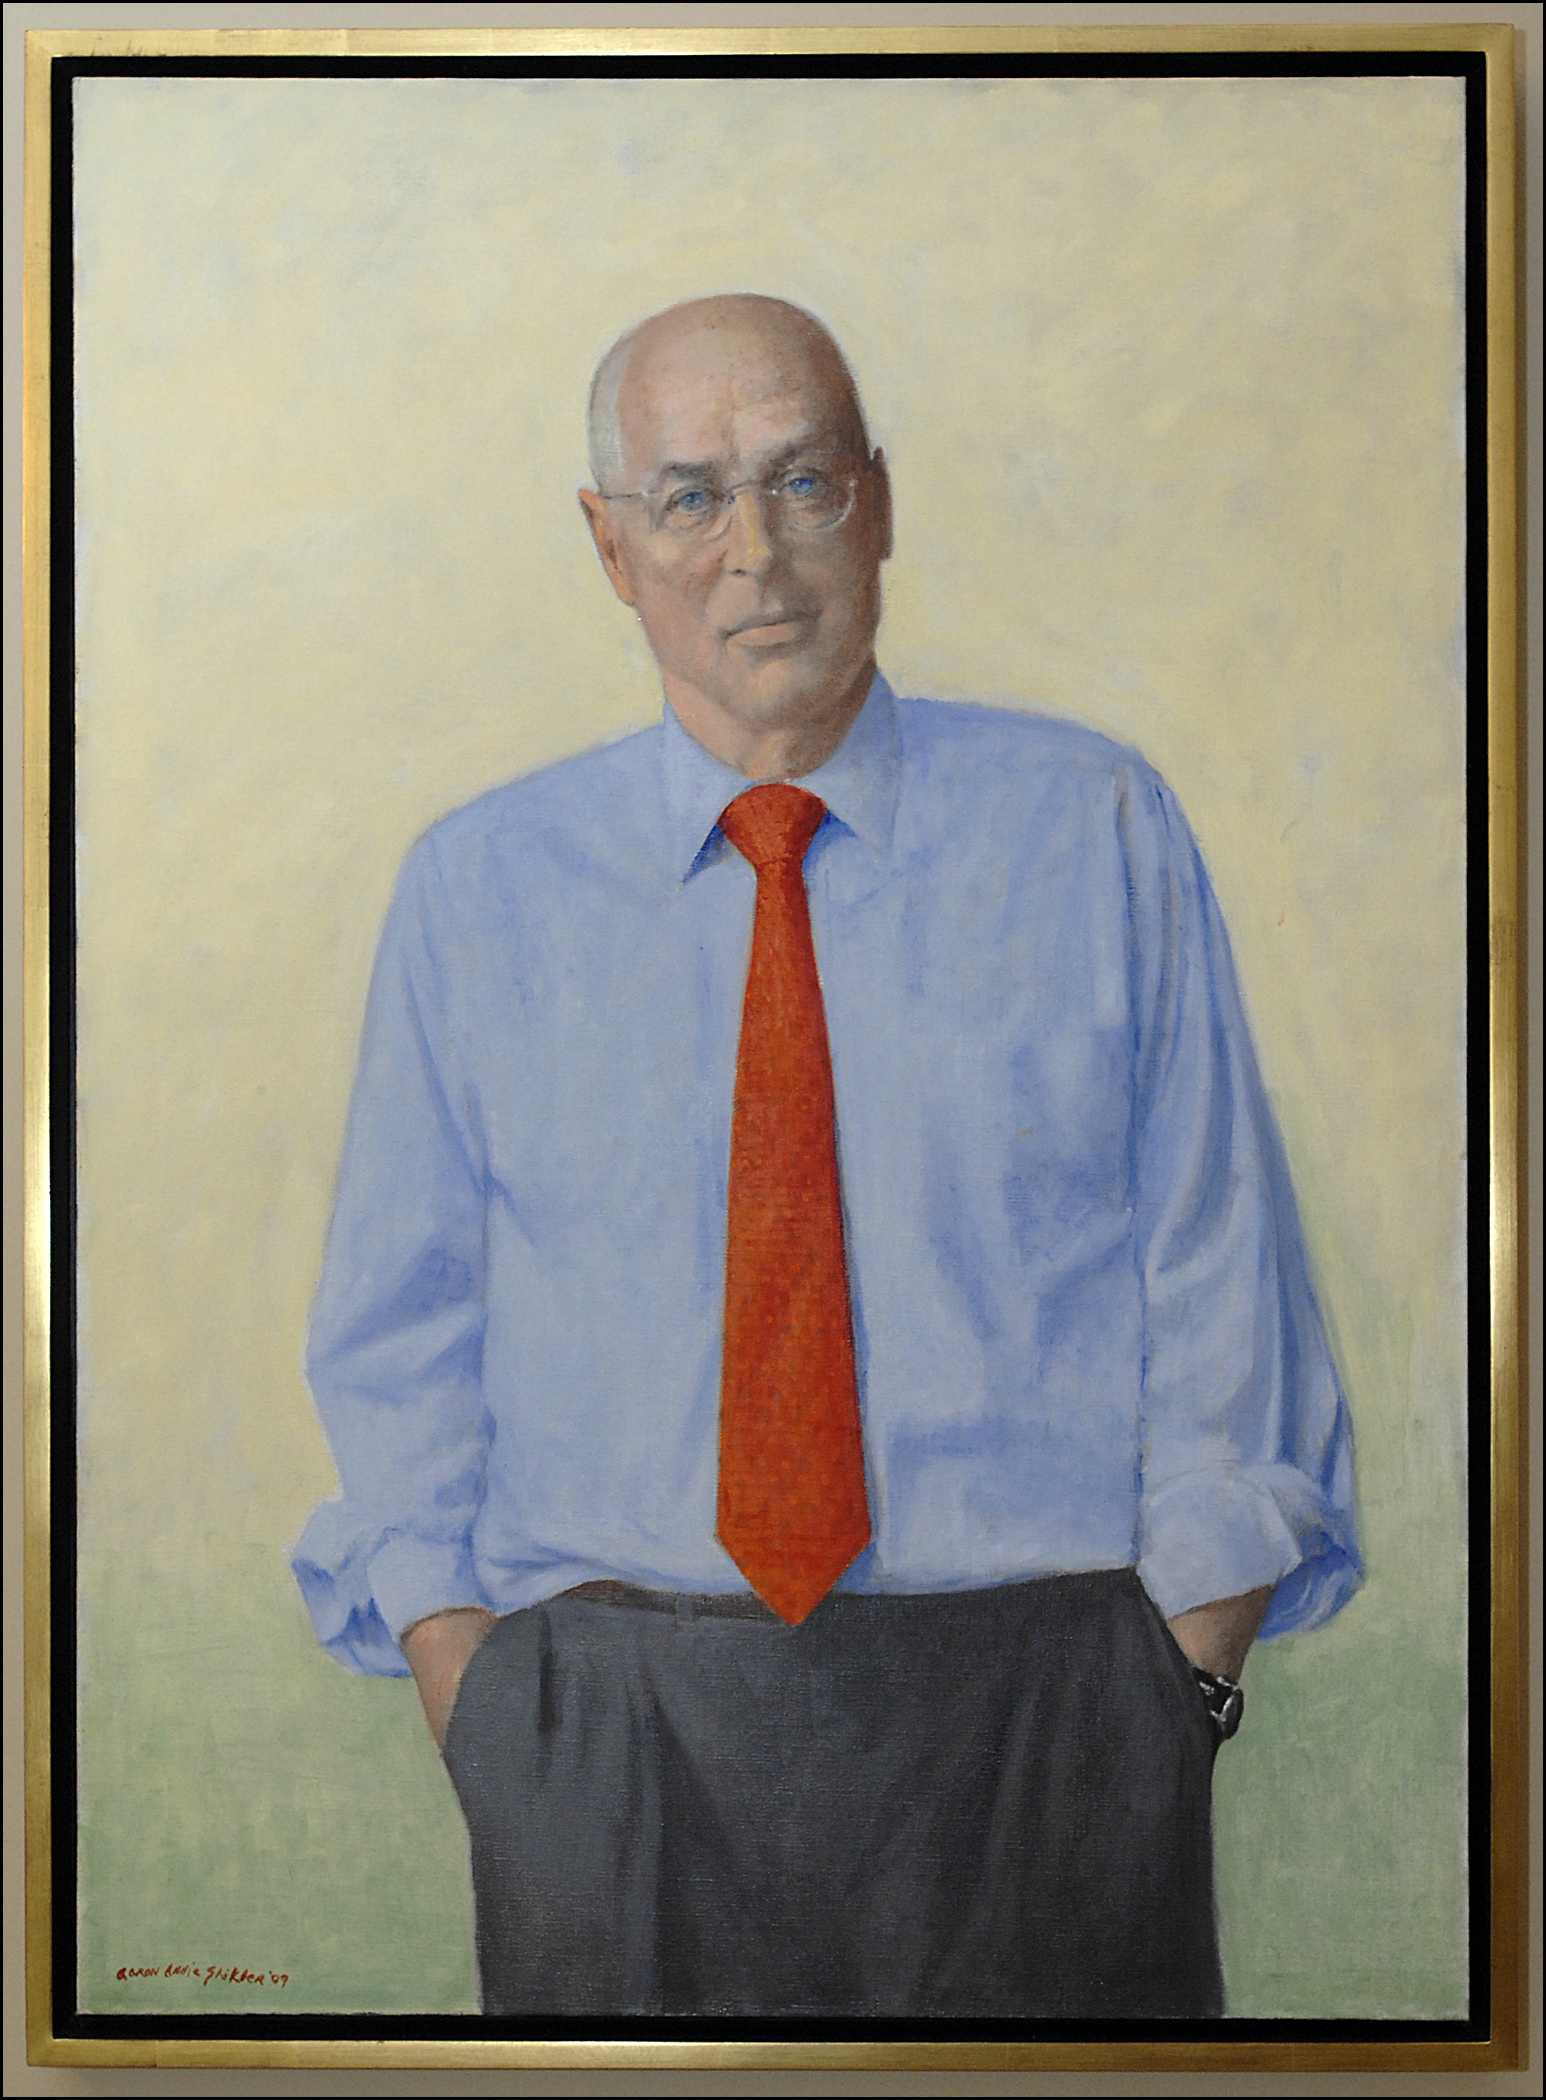 Secretary Paulson's official portrait